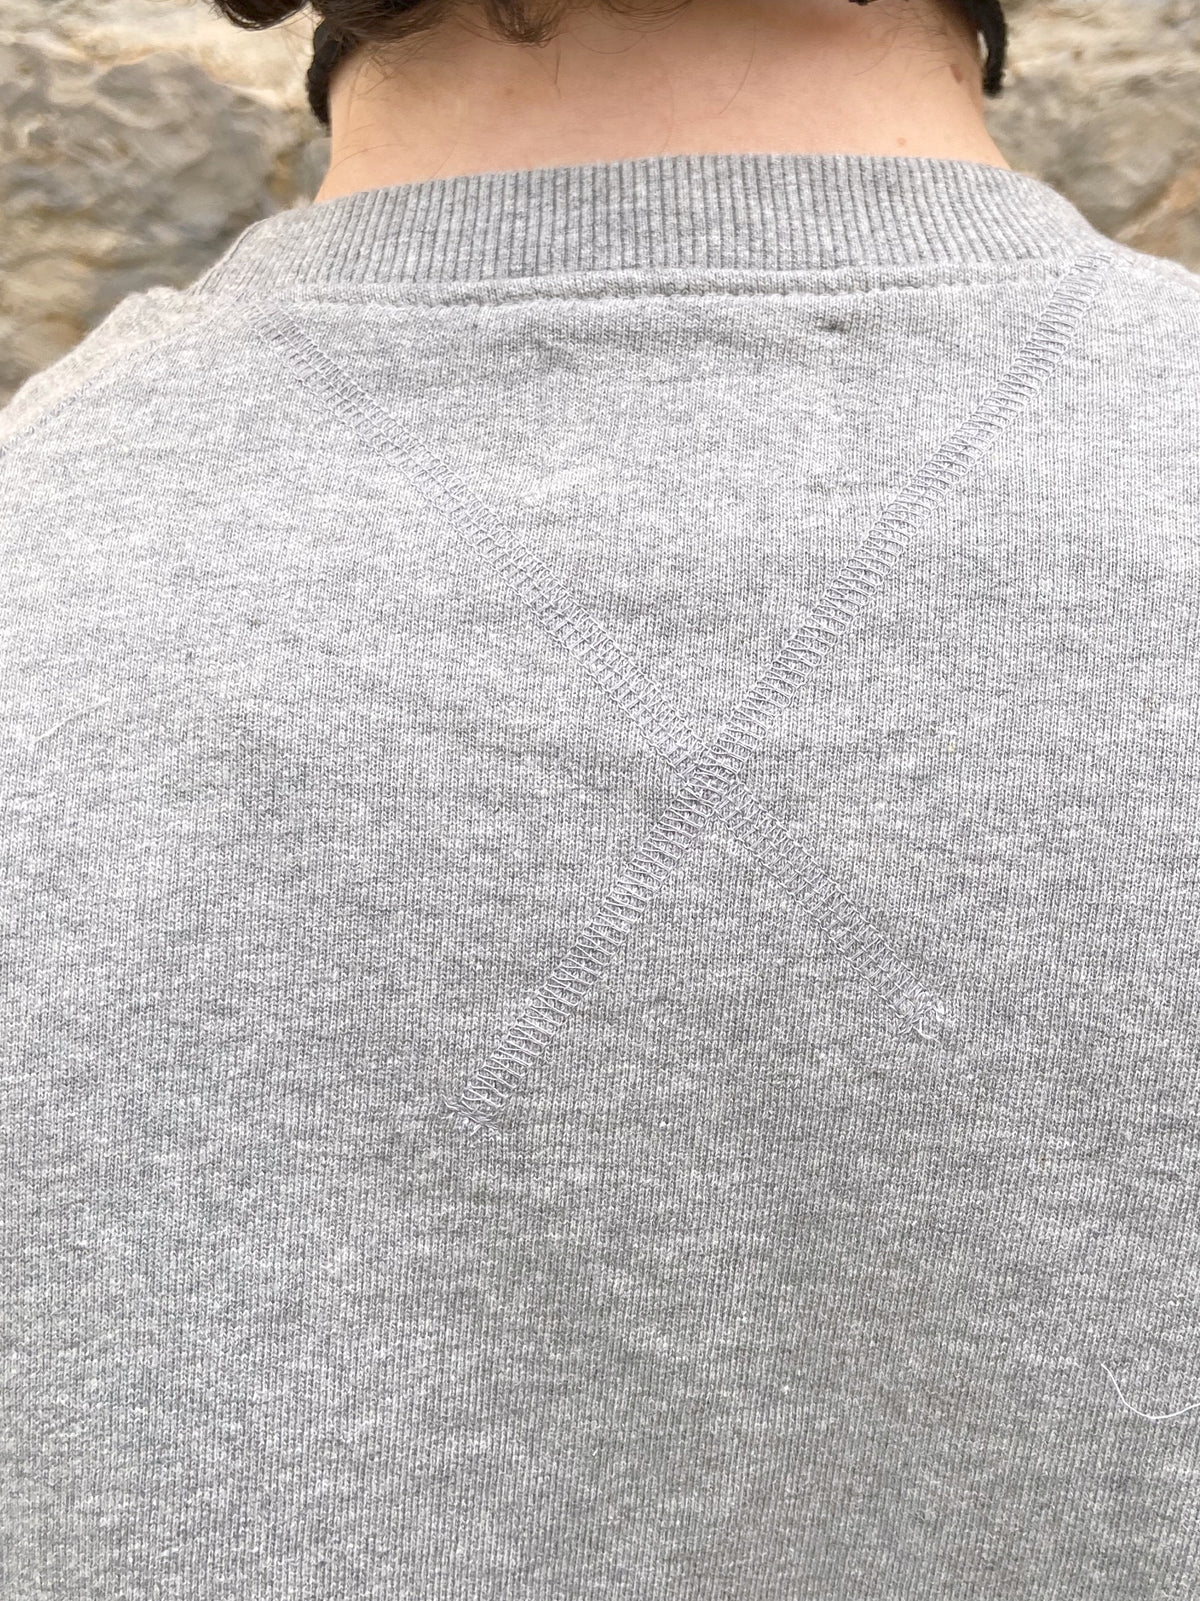 Nudie Samuel Logo Sweatshirt Greymelange